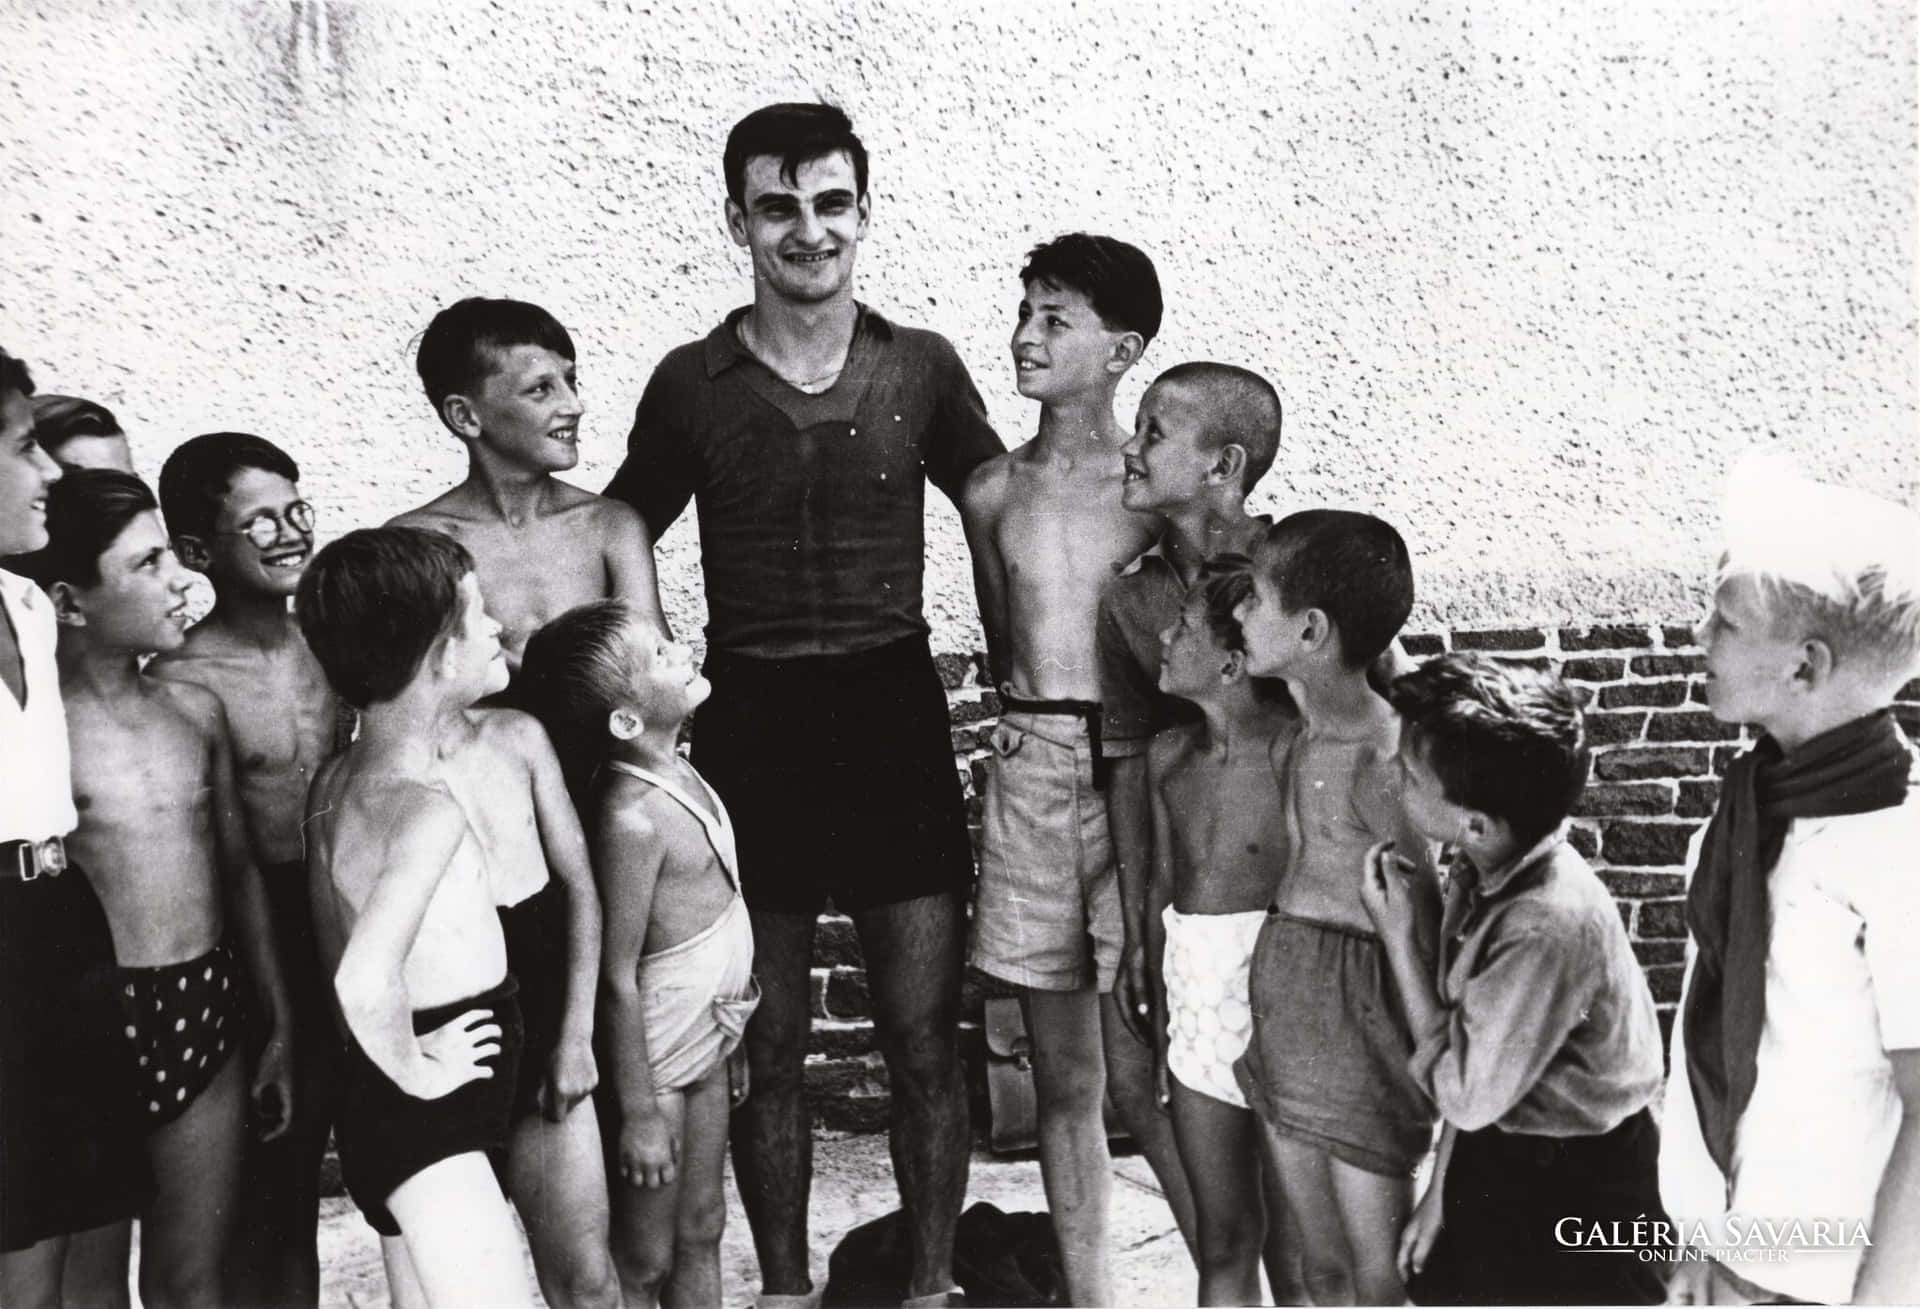 A rare shot of Sandor Kocsis at the Tata Training Camp in 1952 Wallpaper